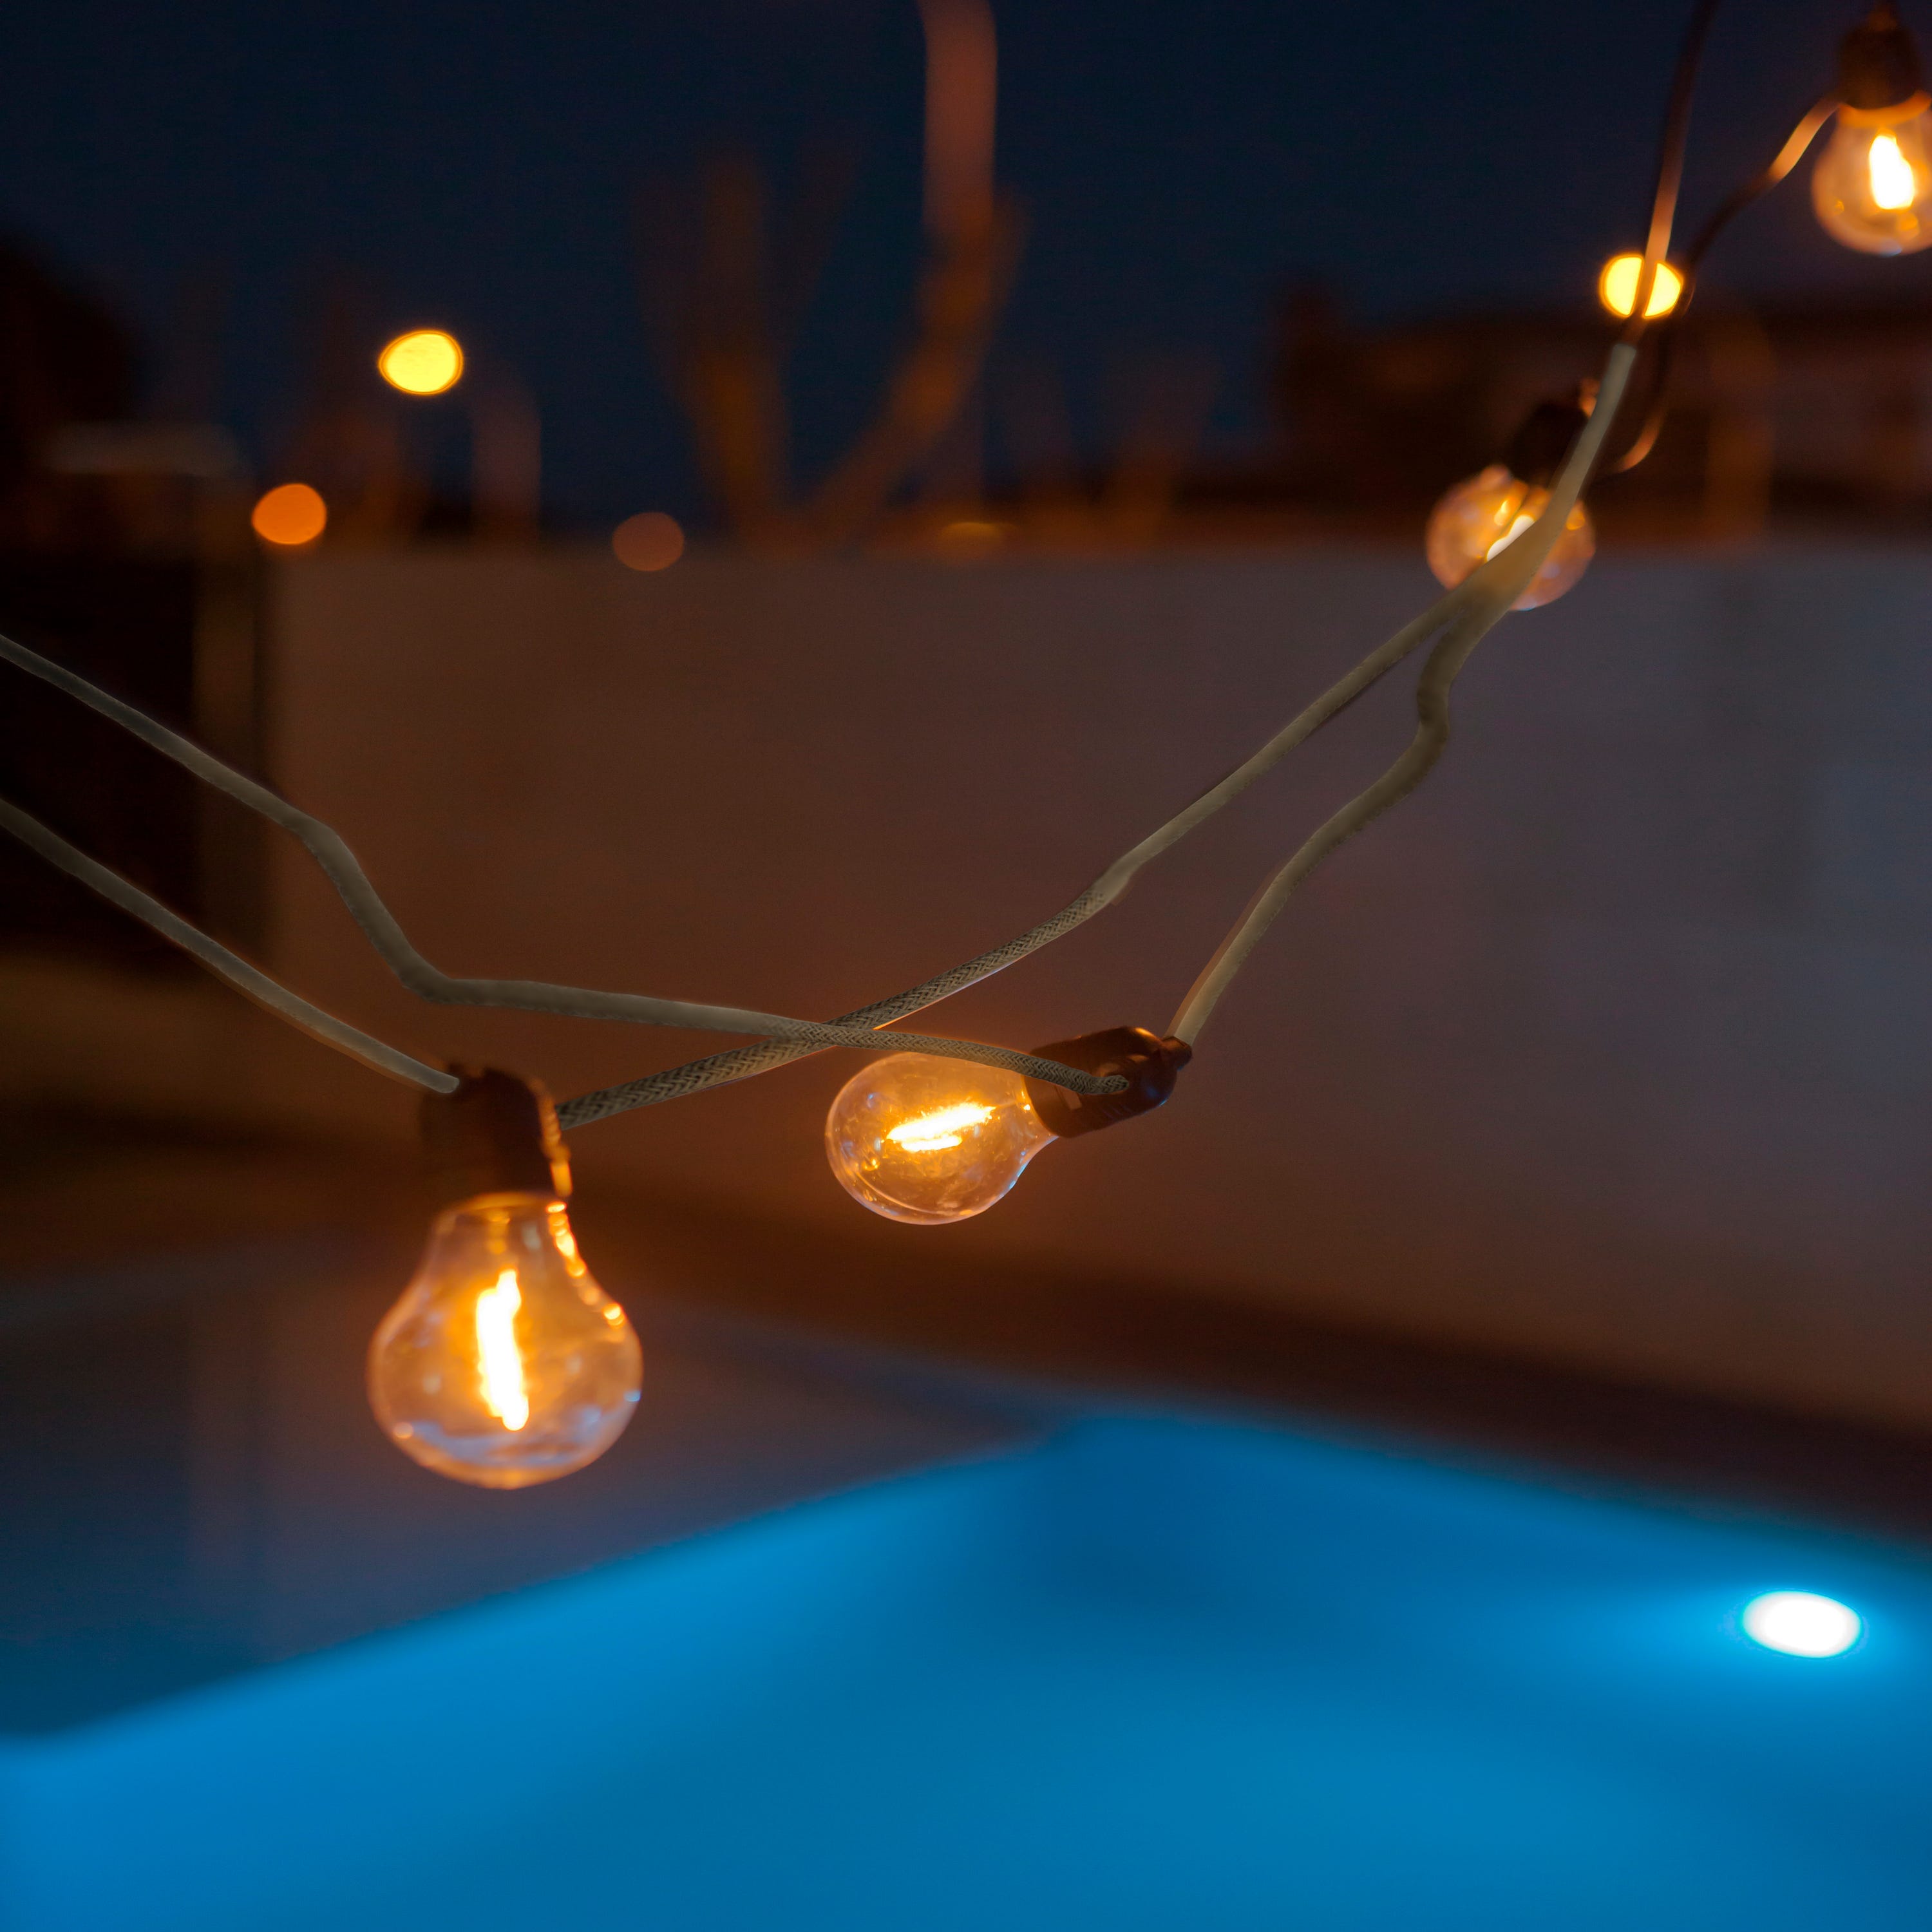 Lot de 15 Ampoules LED S14 E27 blanc chaud pour guirlande solaire